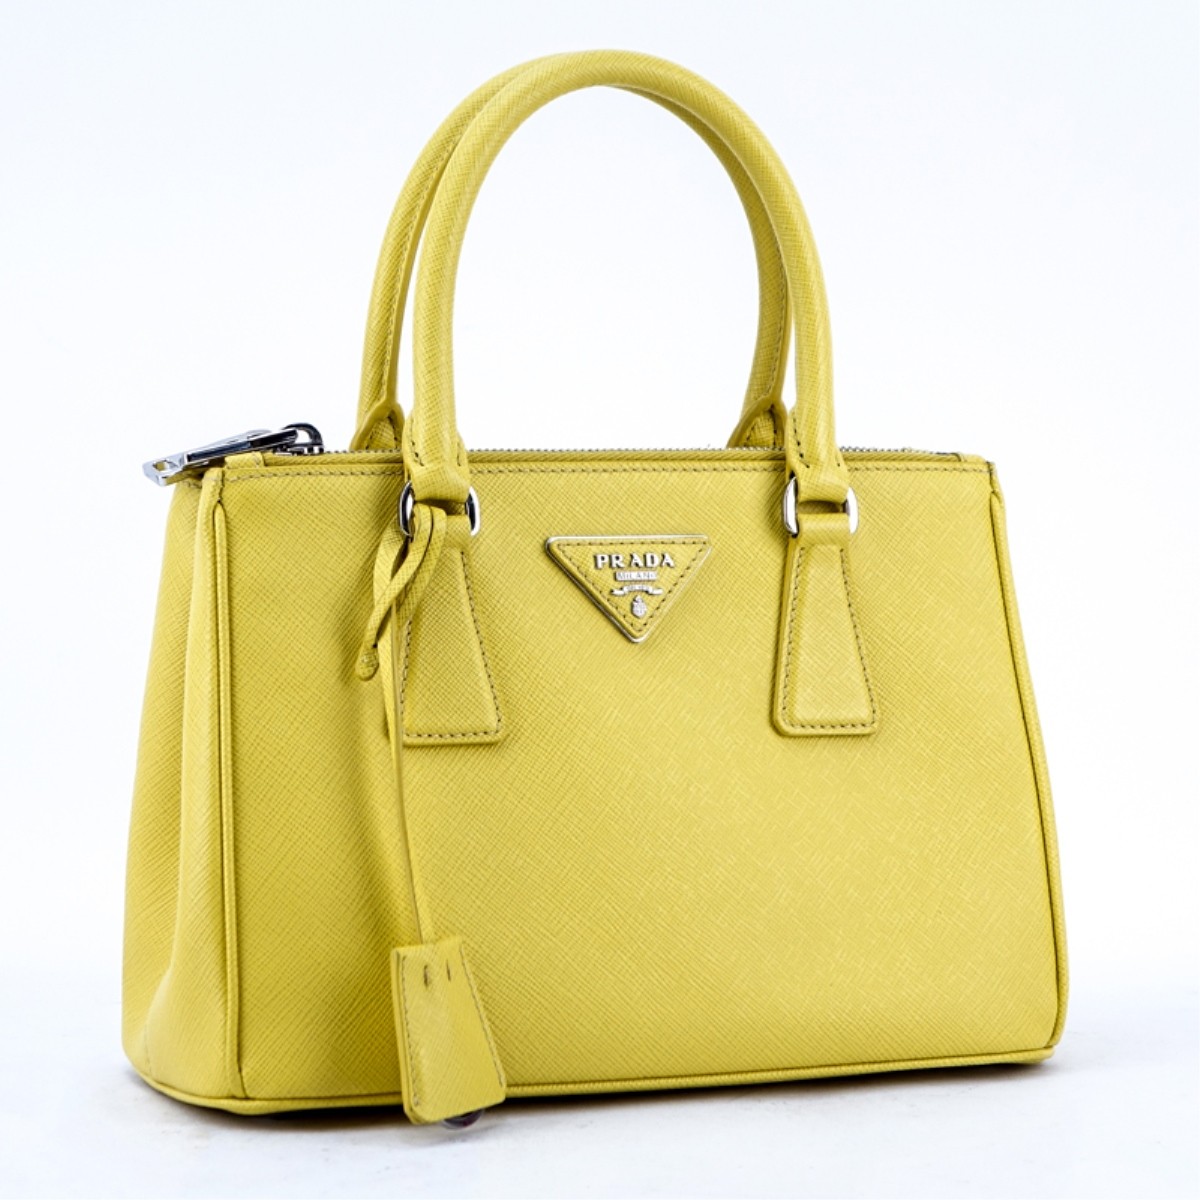 Prada Yellow Small Grain Leather Saffiano Lux Bag